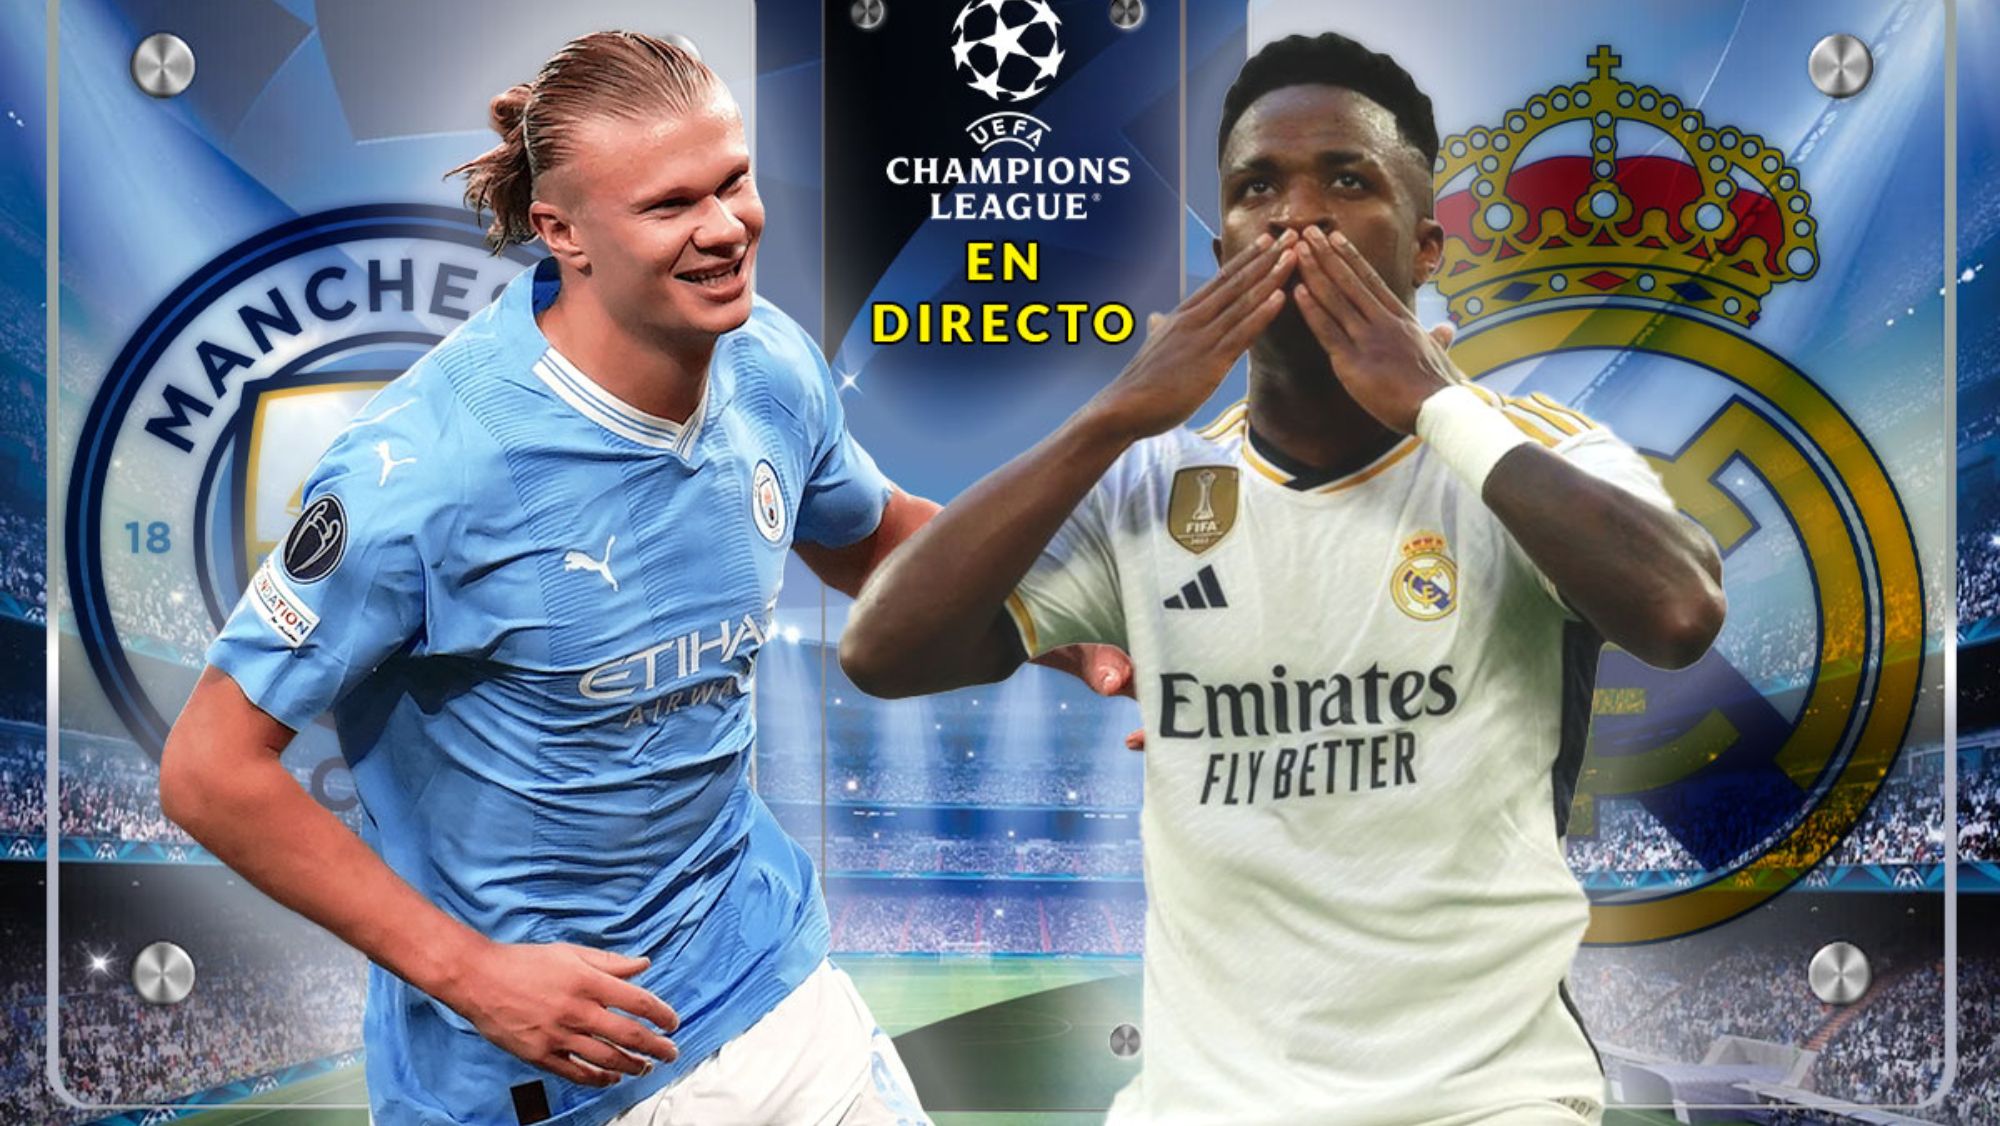 Manchester City - Real Madrid, en directo: partido de Champions League en vivo y online hoy